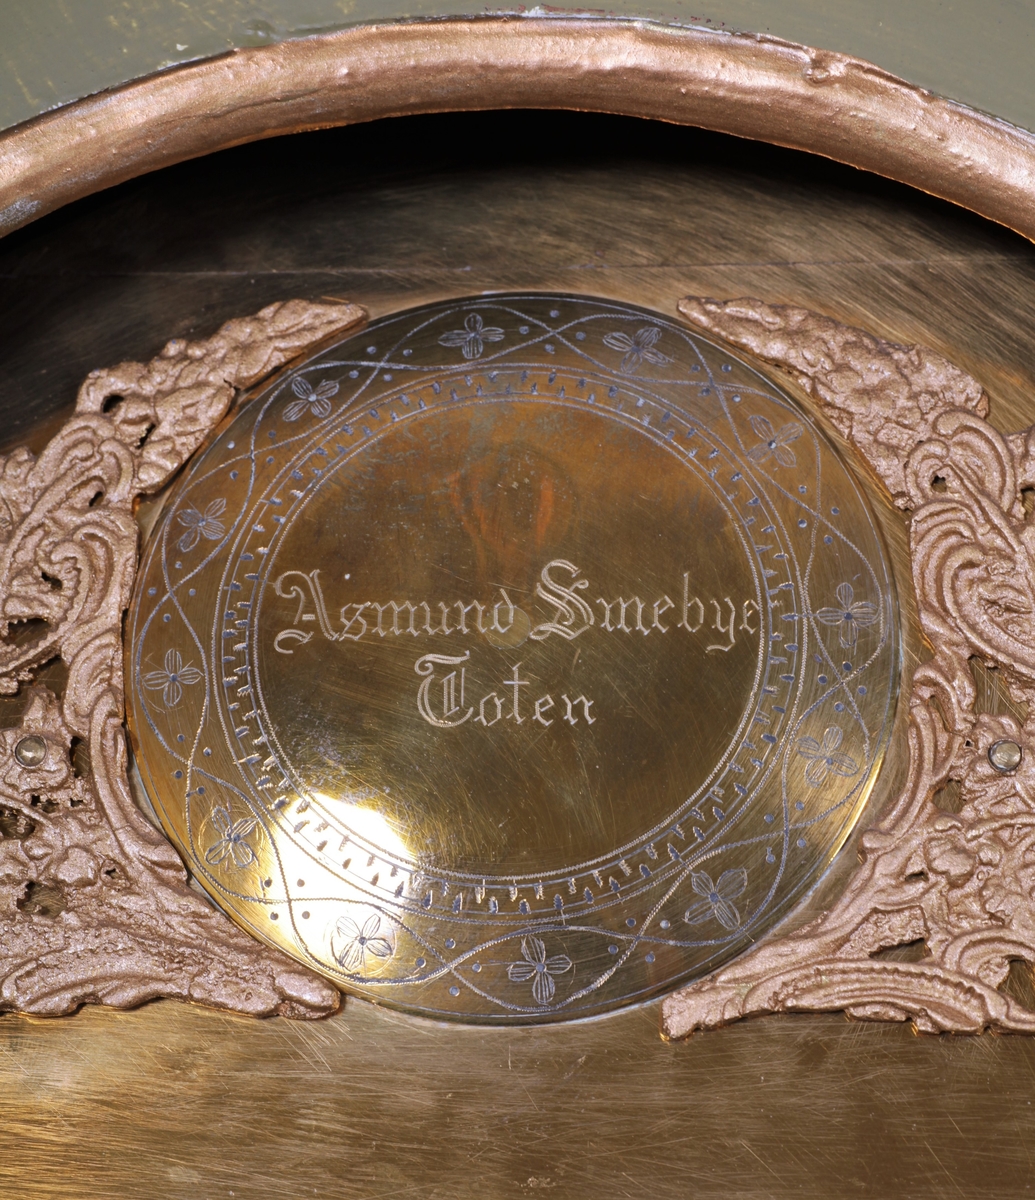 Totenklokke laget av urmaker Asmund Smebye. Kasse laget i gran, med sekundær maling, utført i 1973. Messingskive med siselering og støpte ornamenter. Innskripsjon på baksiden av pendel - reparasjon utført i 1901.